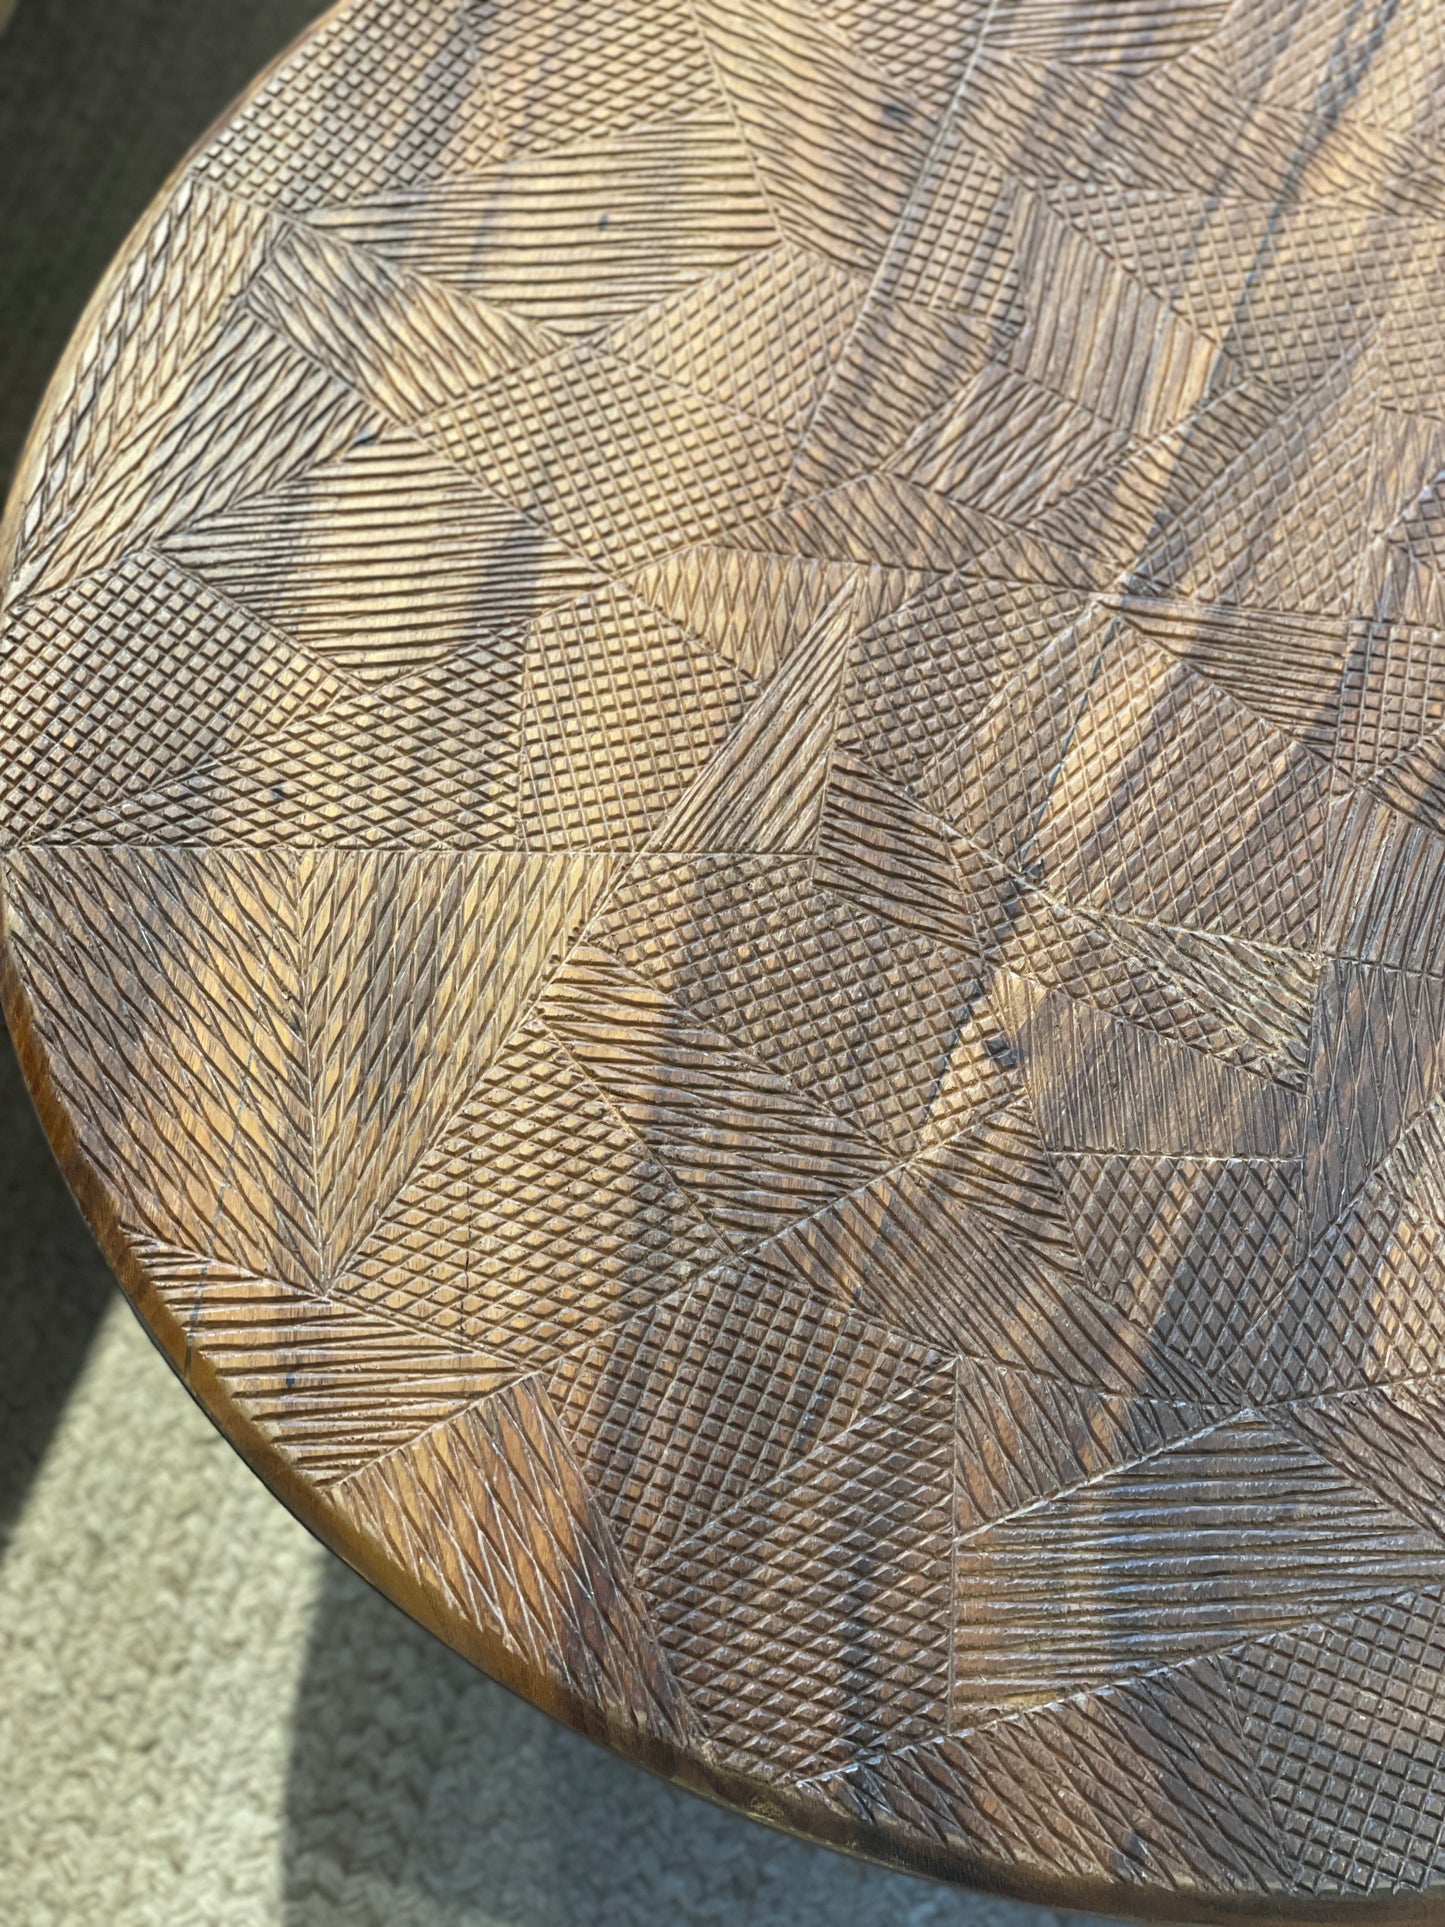 【已售罄】COCOA Large Side Table 印尼雨木雕刻茶几(陳列品出售)